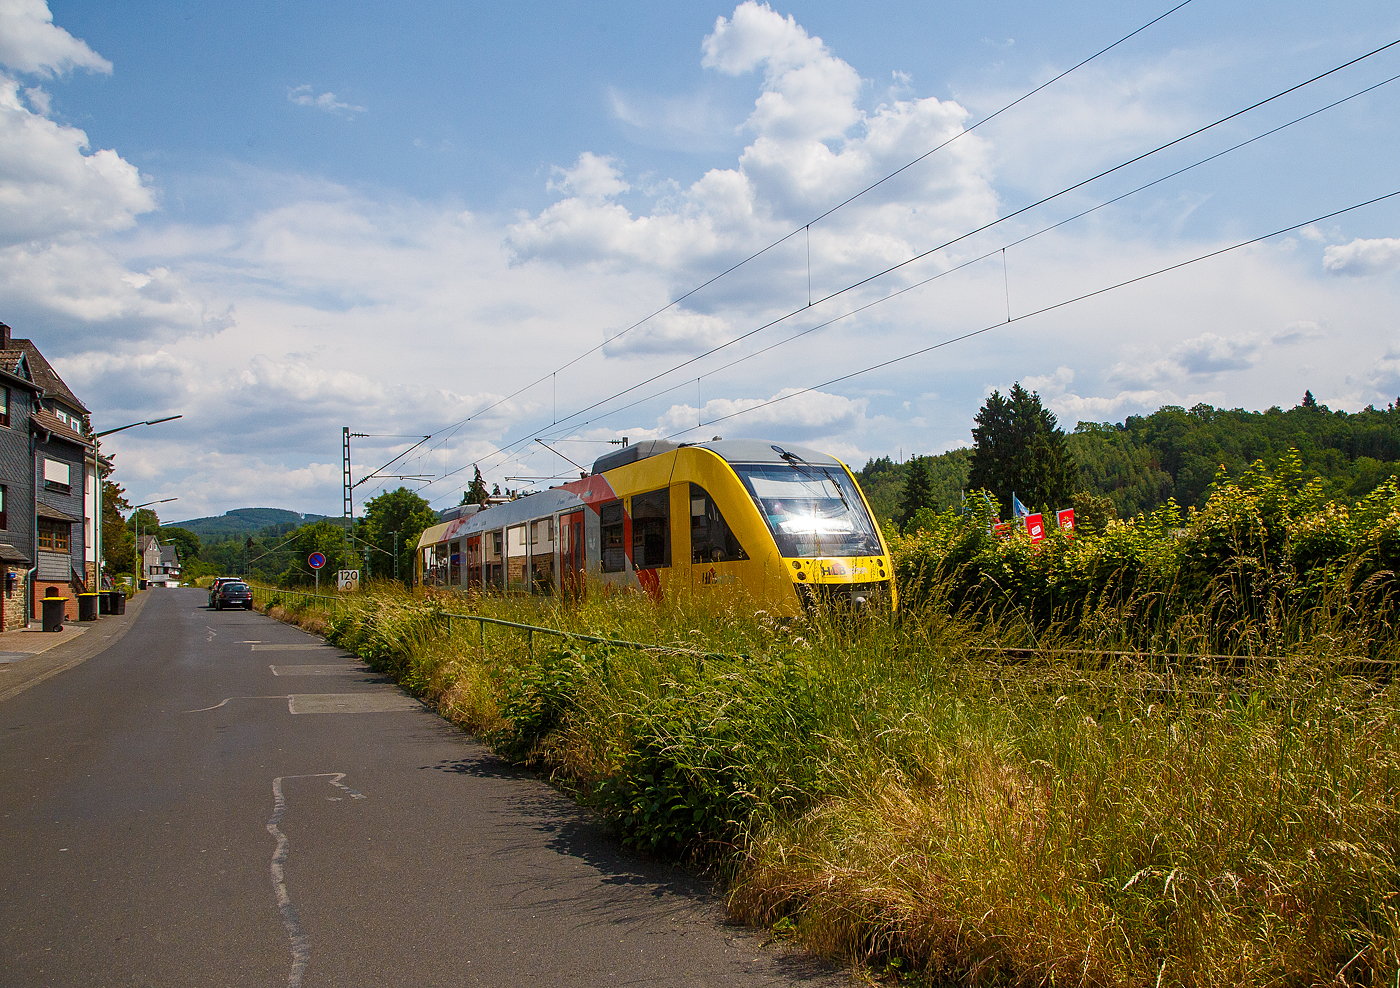 Der VT 208 ABp (95 80 0640 108-6 D-HLB), ein Alstom Coradia LINT 27 der HLB, fährt am 06.06.2023, als RB 90  Westerwald-Sieg-Bahn  (Siegen - Betzdorf – Au – Altenkirchen – Limburg/Lahn), durch Kirchen (Sieg) und erreicht auch bald den Bahnhof.

Der Alstom Coradia LINT 27 wurde 2004 von Alstom (LHB) in Salzgitter unter der Fabriknummer 1187-008 für die vectus Verkehrsgesellschaft mbH gebaut, mit dem Fahrplanwechsel am 14.12.2014 wurden alle Fahrzeuge der vectus nun Eigentum der HLB.
